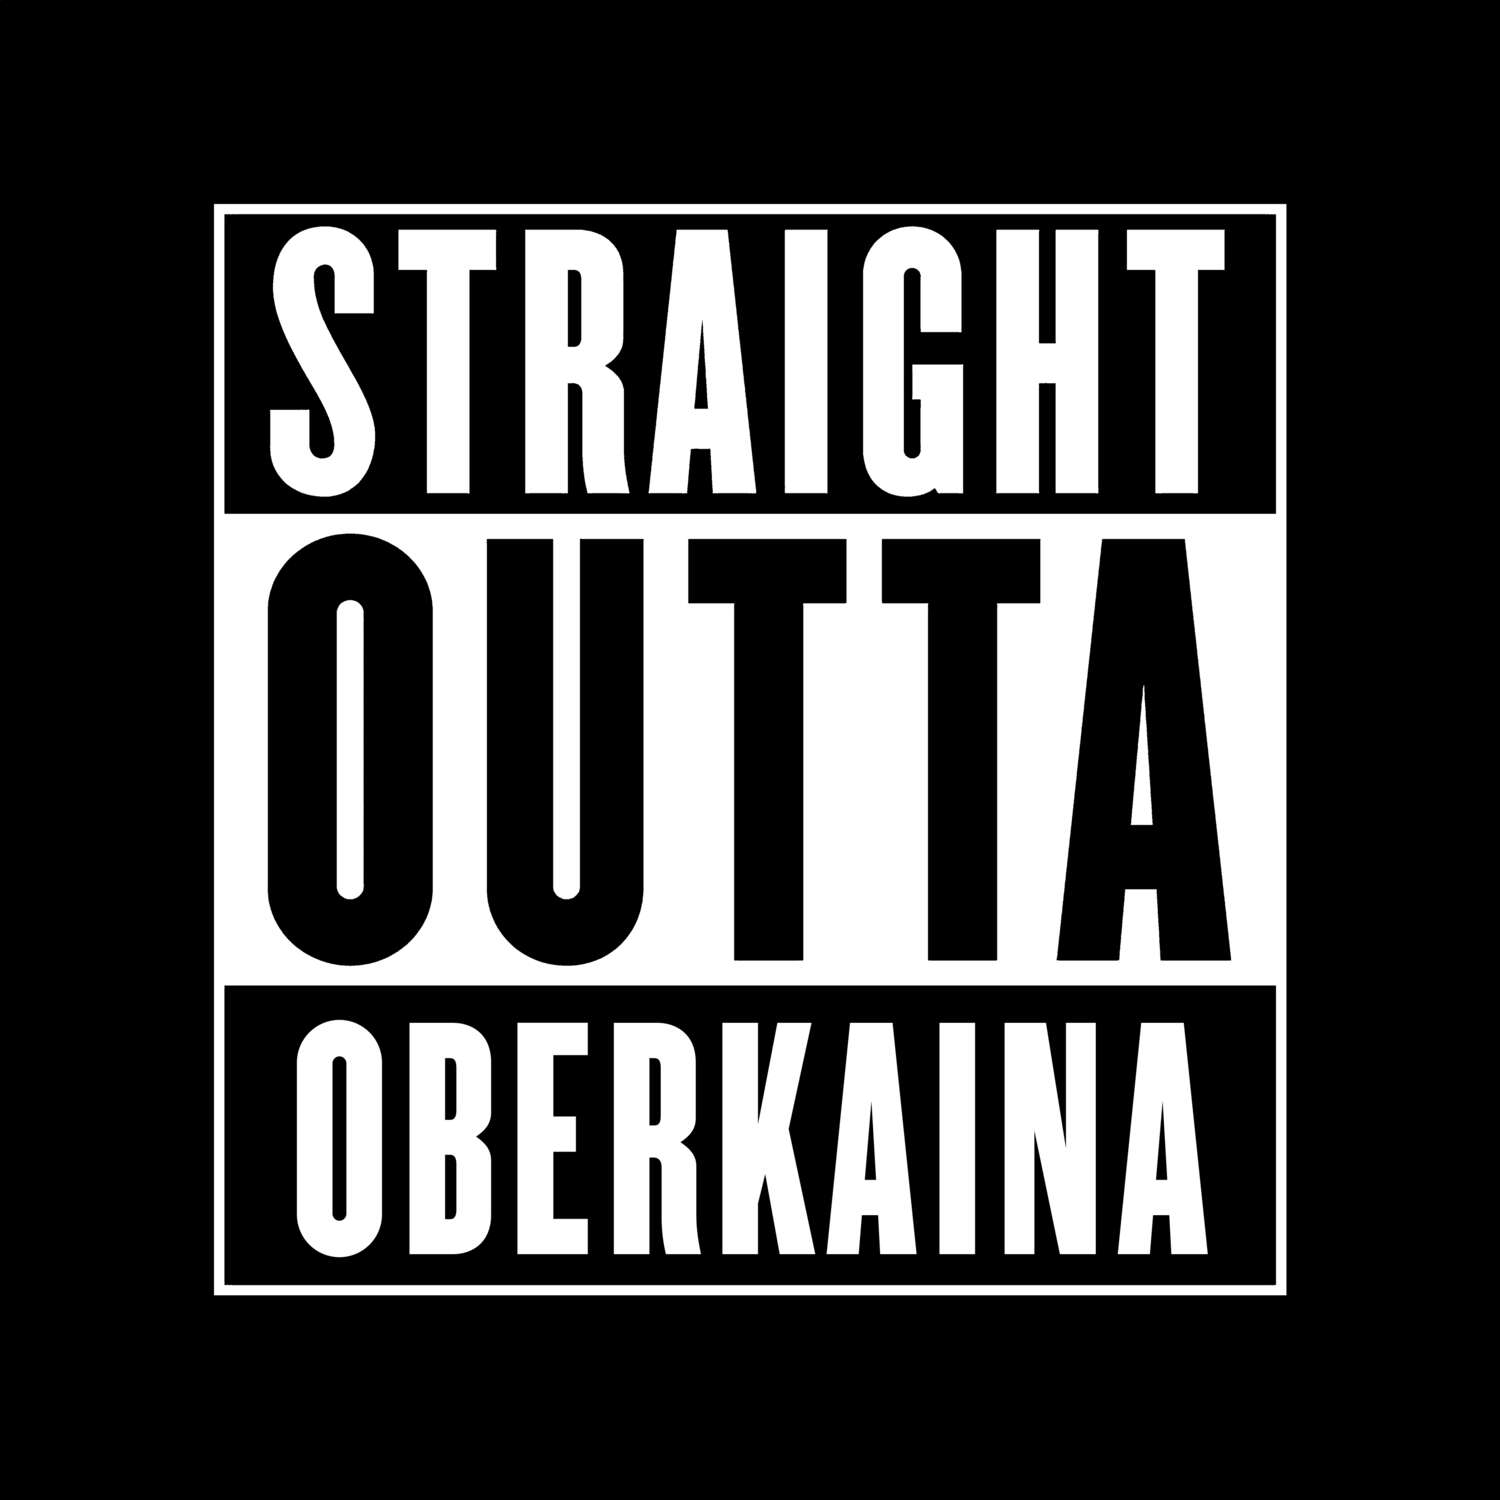 Oberkaina T-Shirt »Straight Outta«